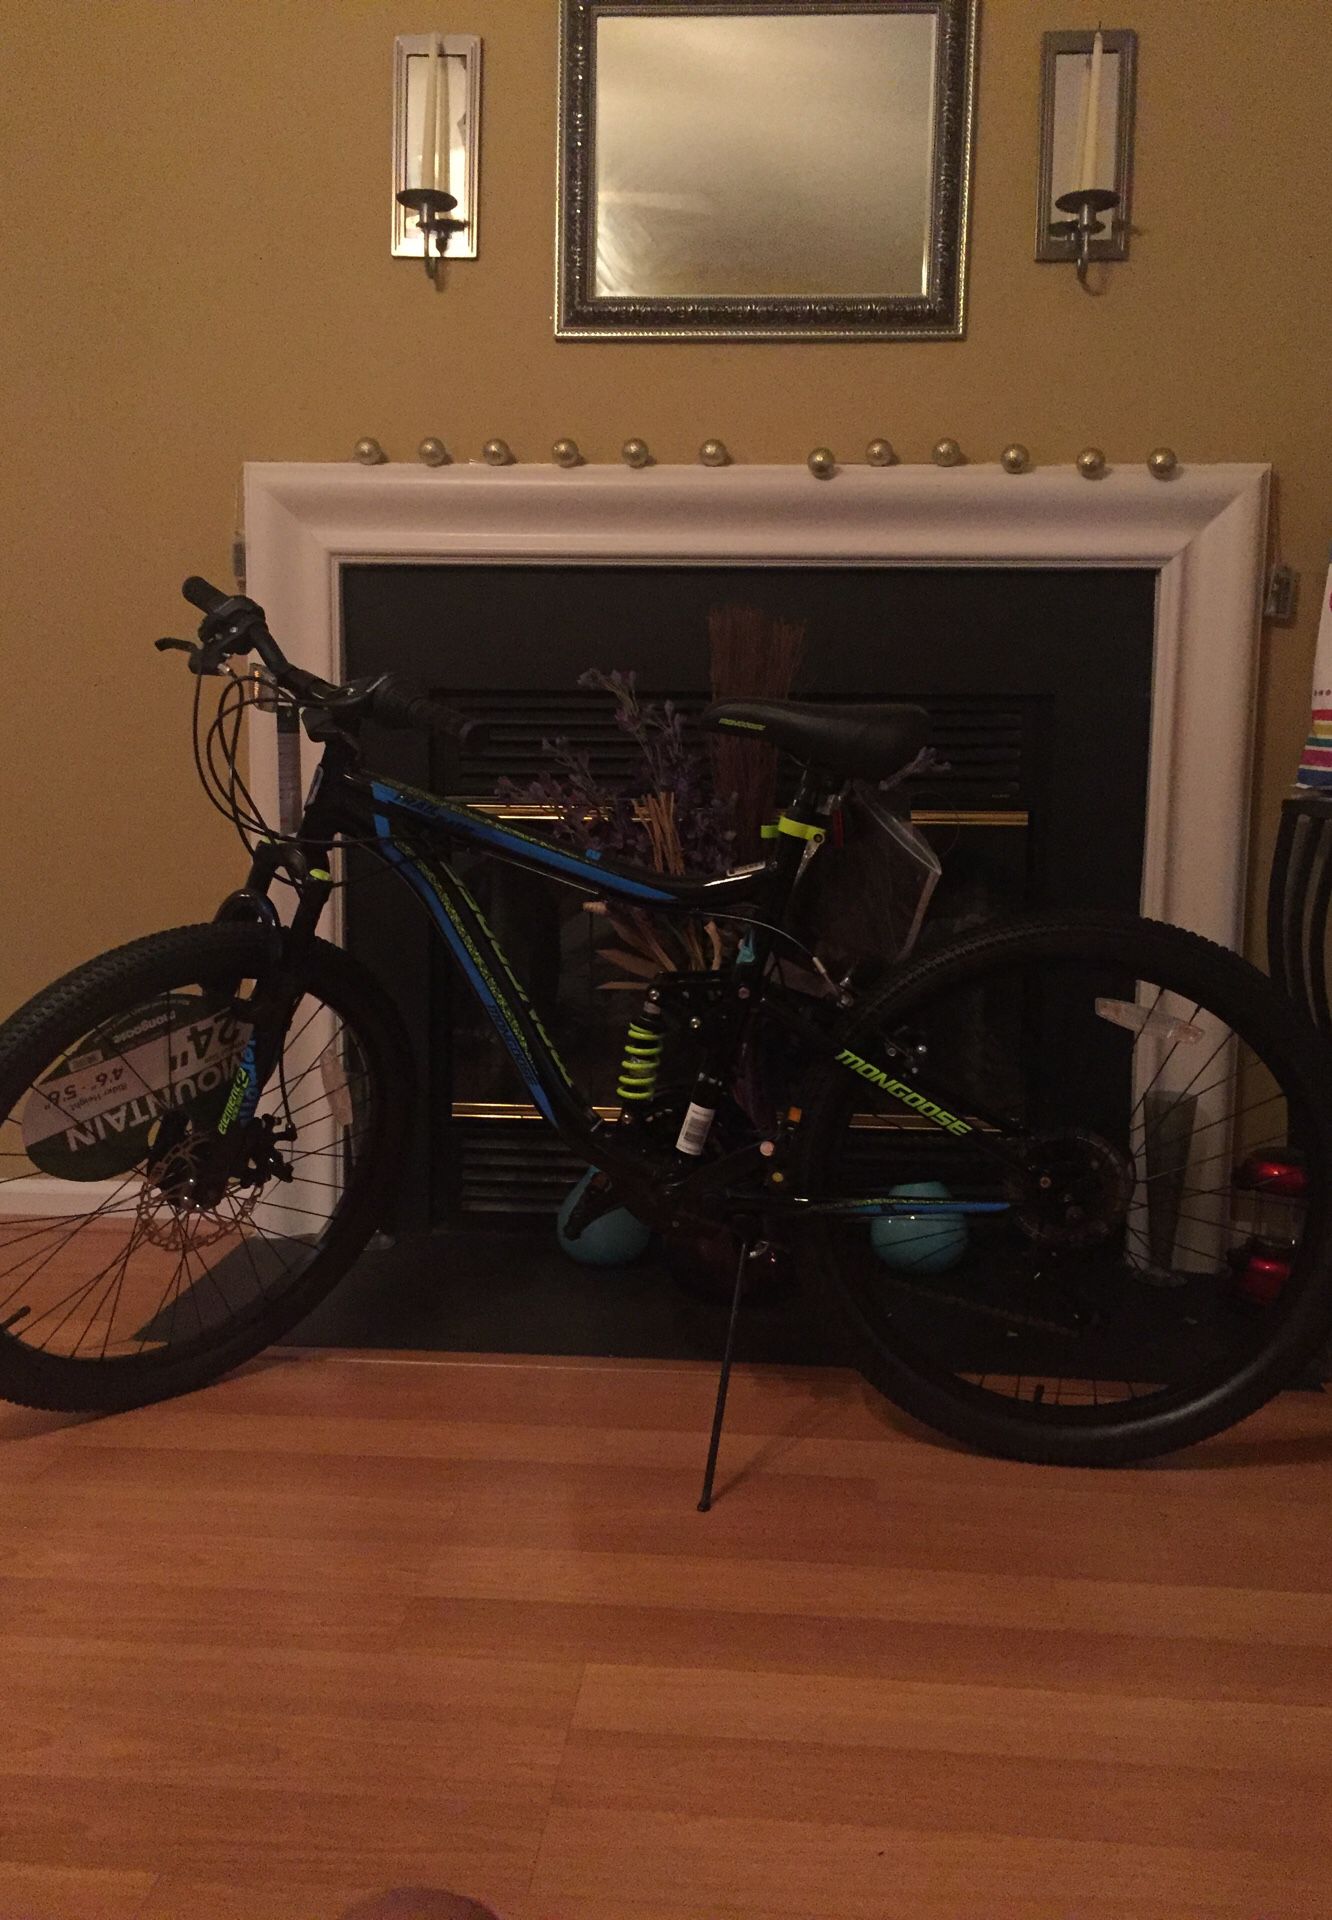 Mongoose 24” Boy’s Trail Blazer Mountain Bike